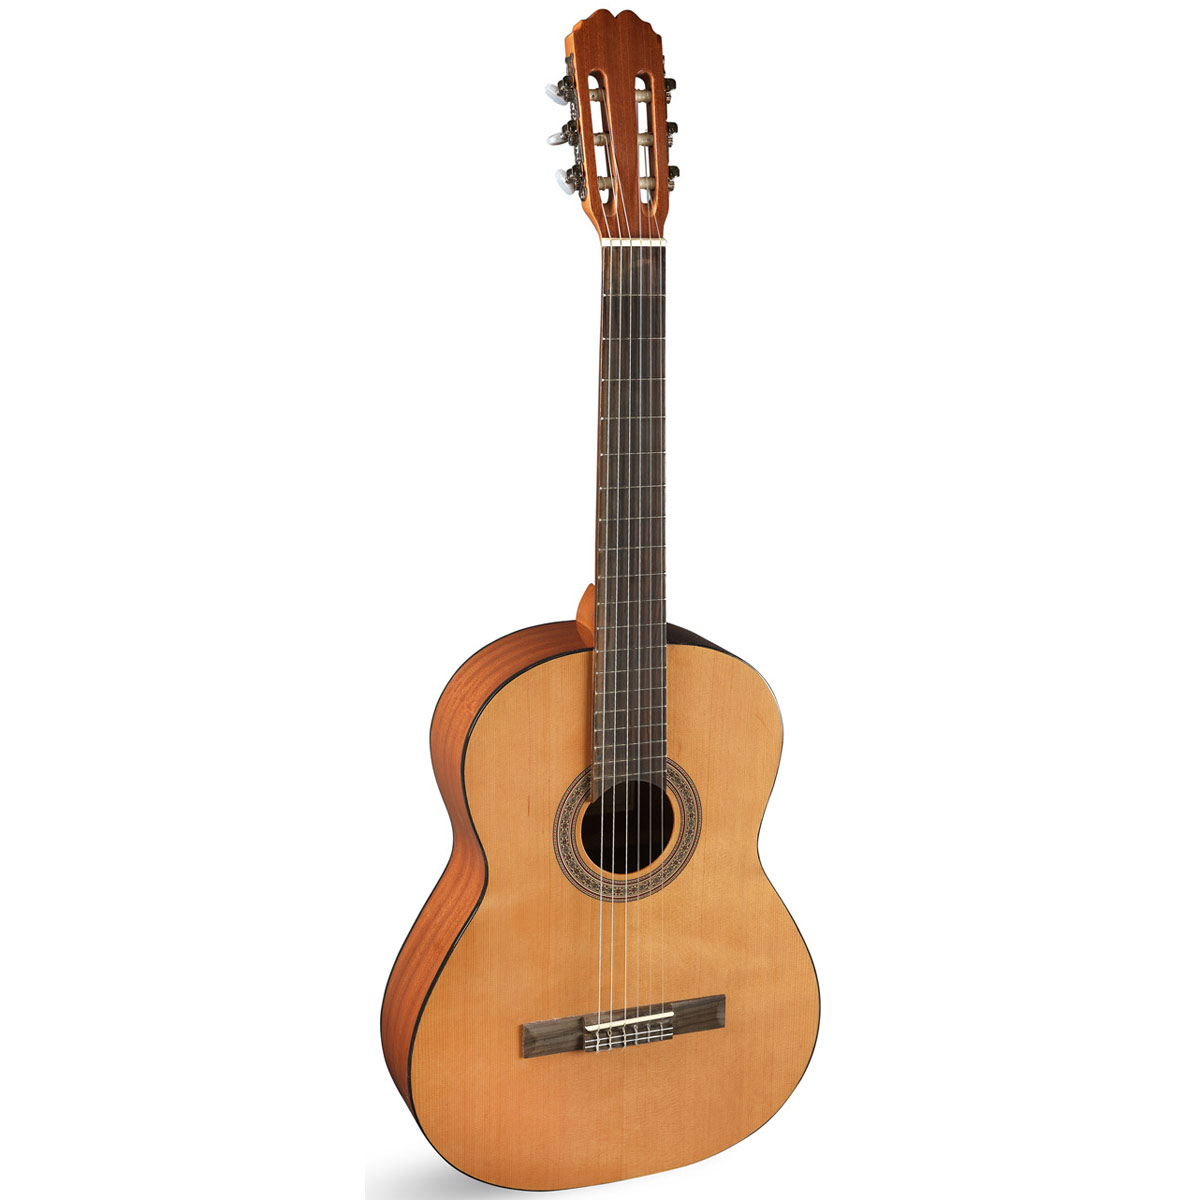 Comprar Guitarra de Principiante al mejor precio en Prieto M�sica